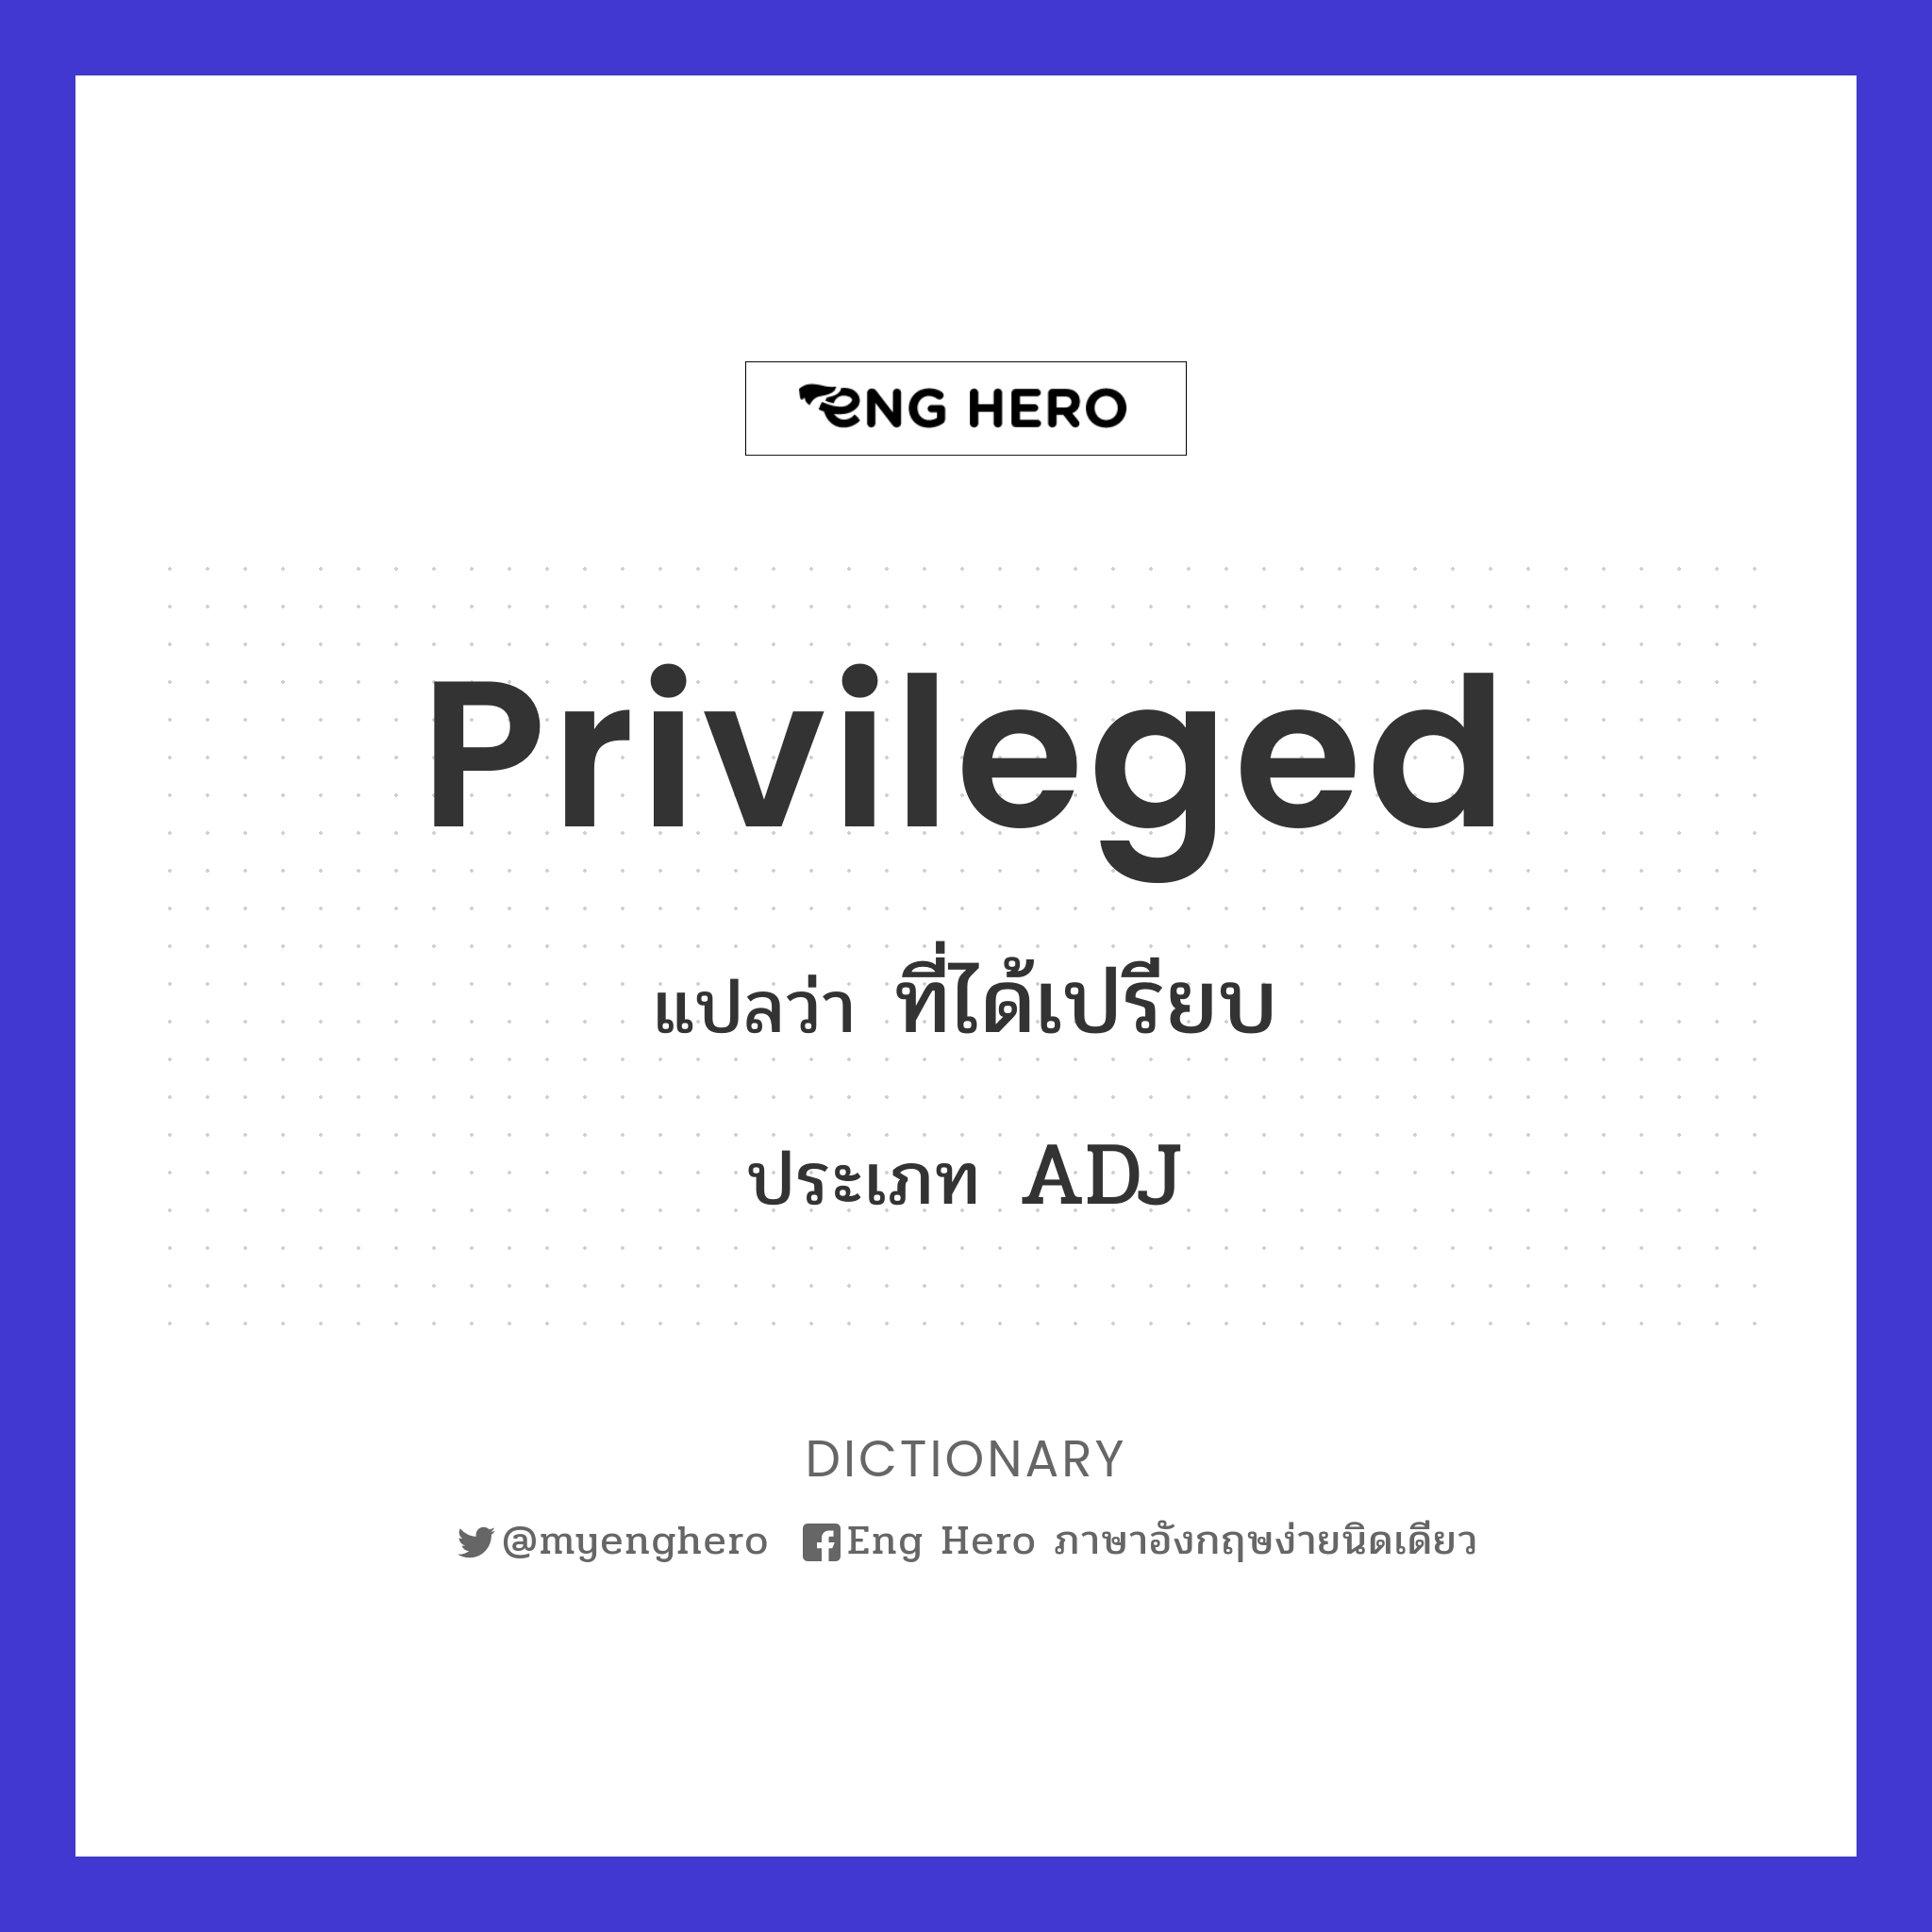 privileged